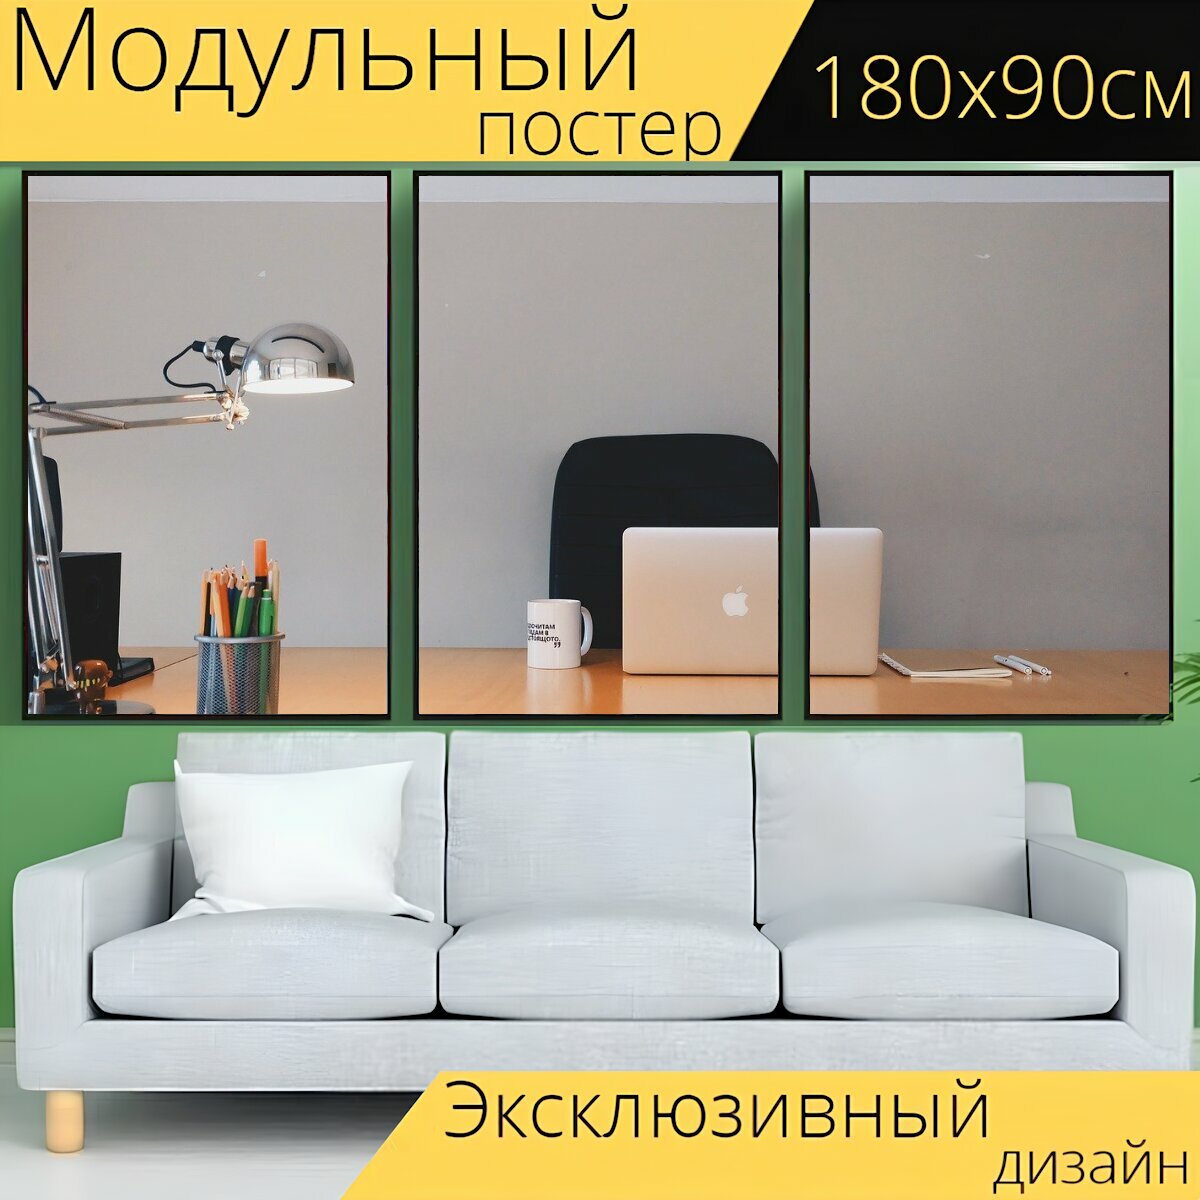 Модульный постер "Офис, стол письменный, древесина" 180 x 90 см. для интерьера